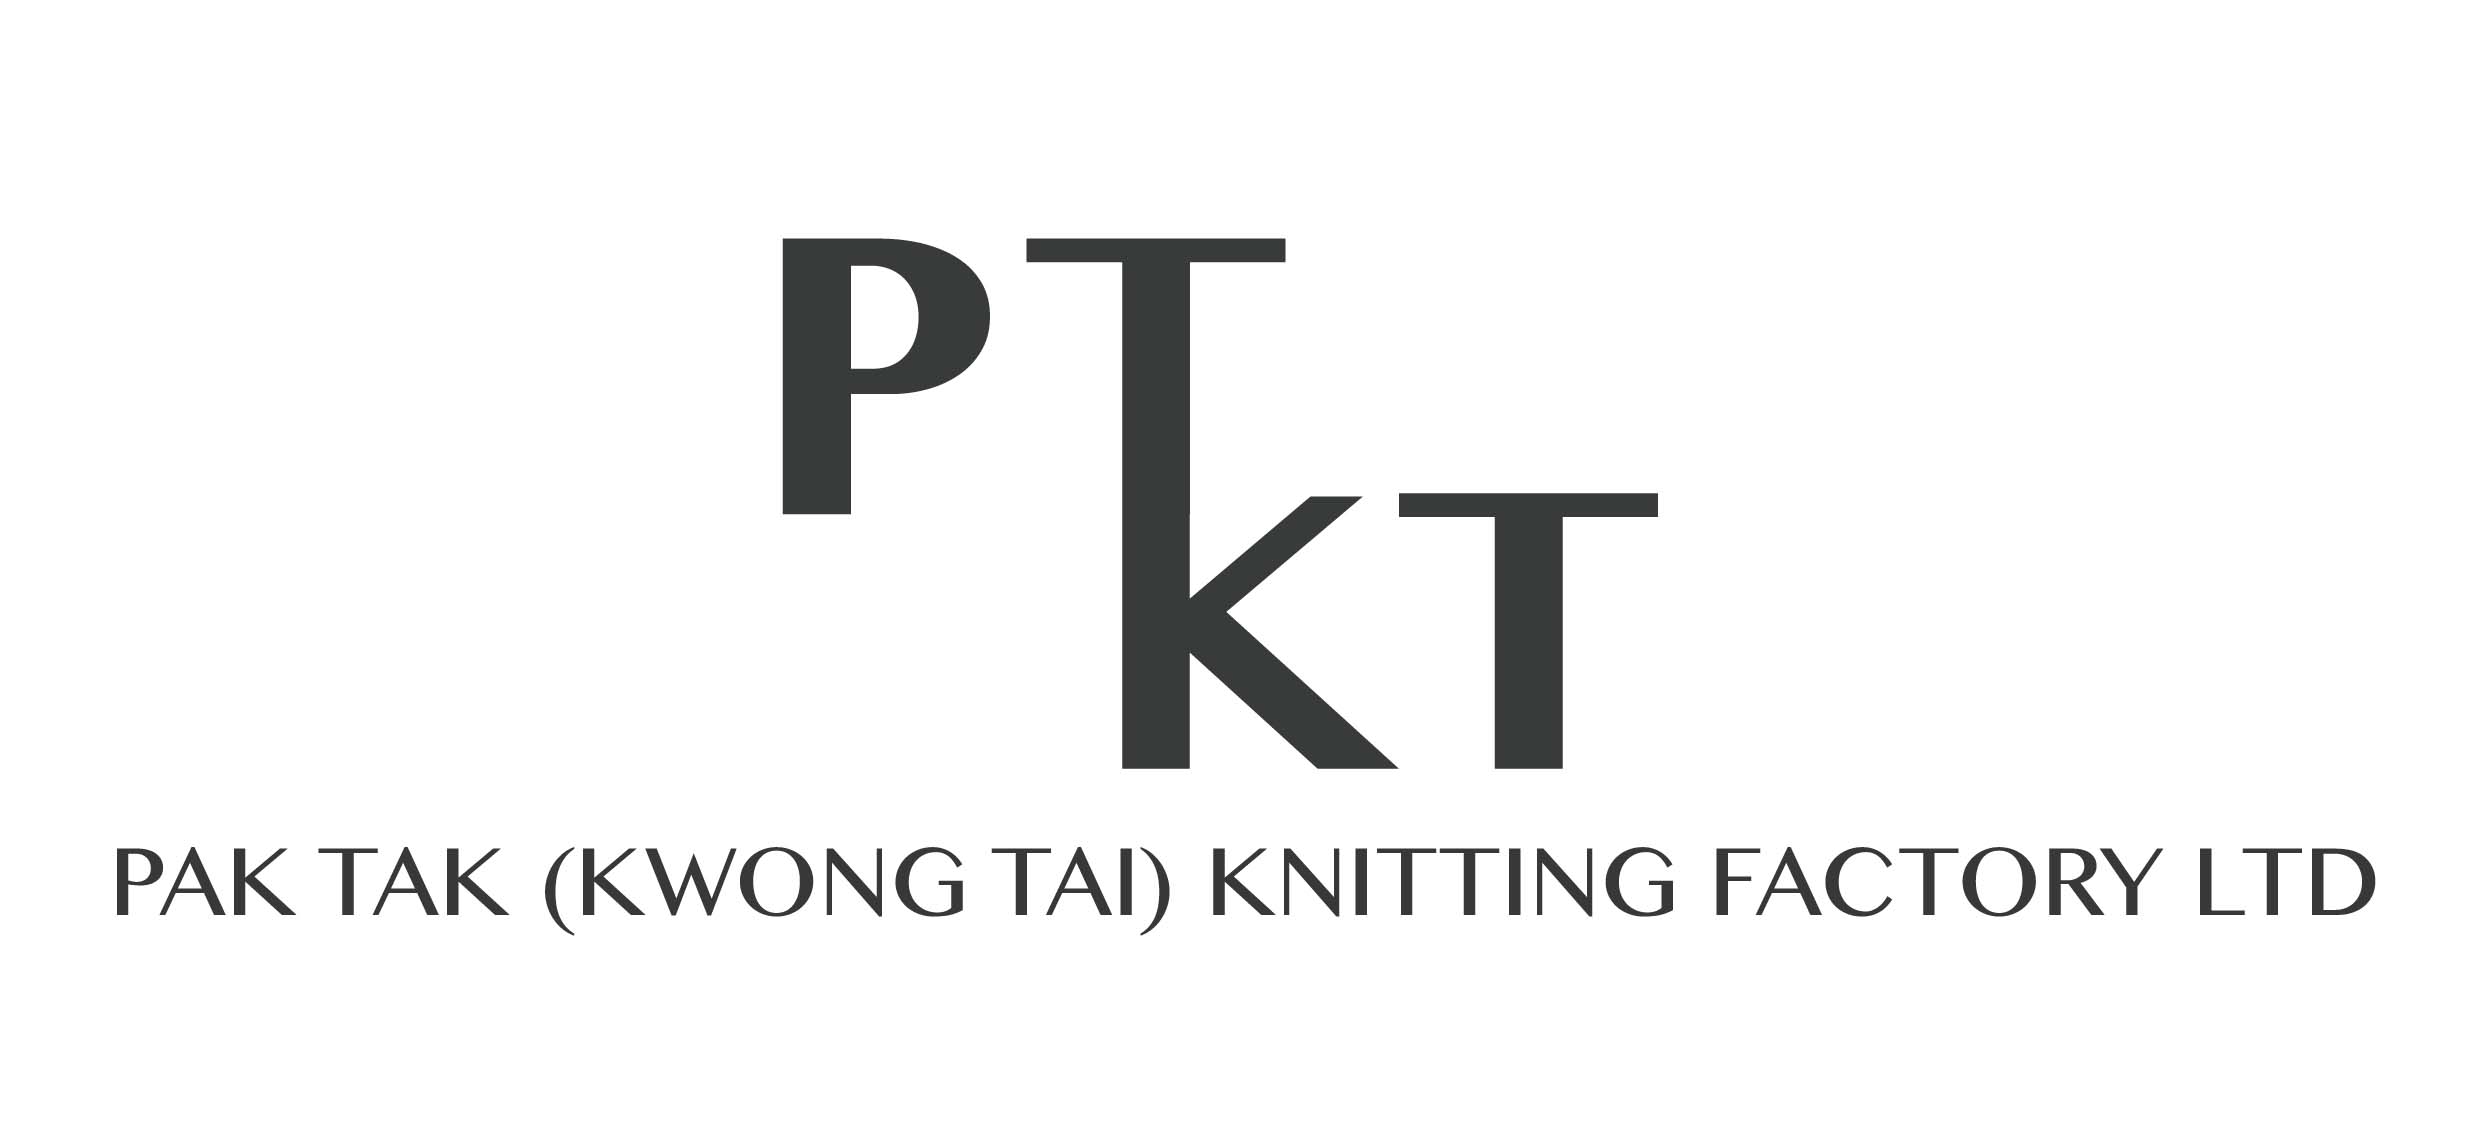 Pak Tak (kwong Tai) Knitting Factory Limited